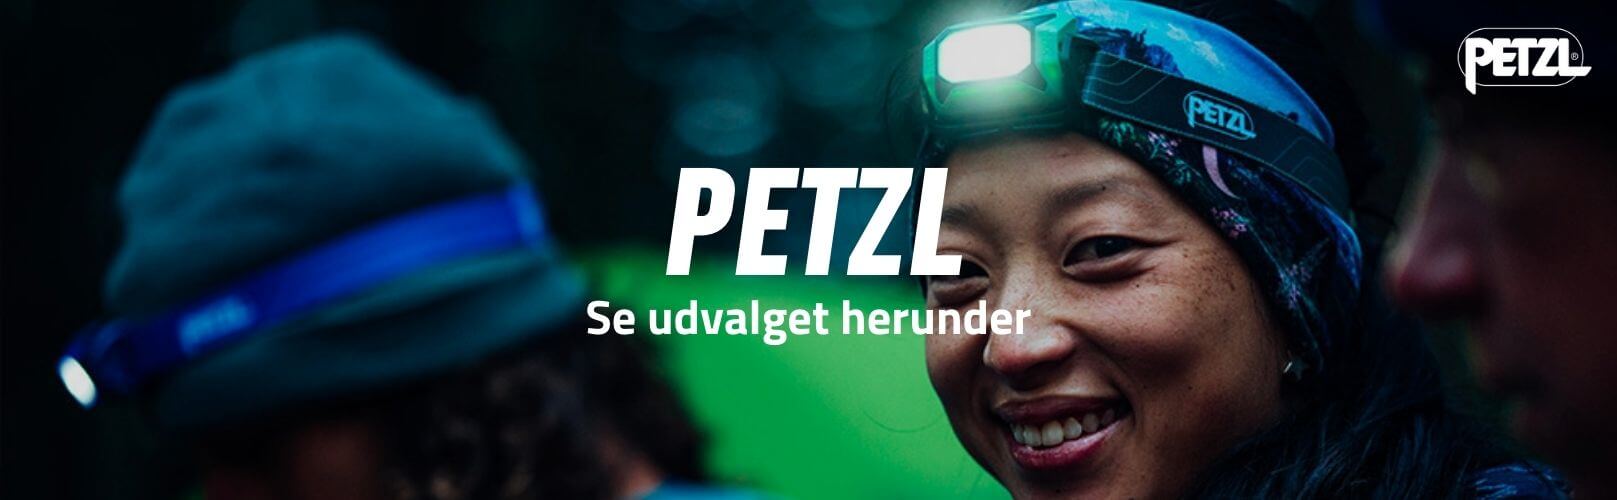 Petzl brand banner